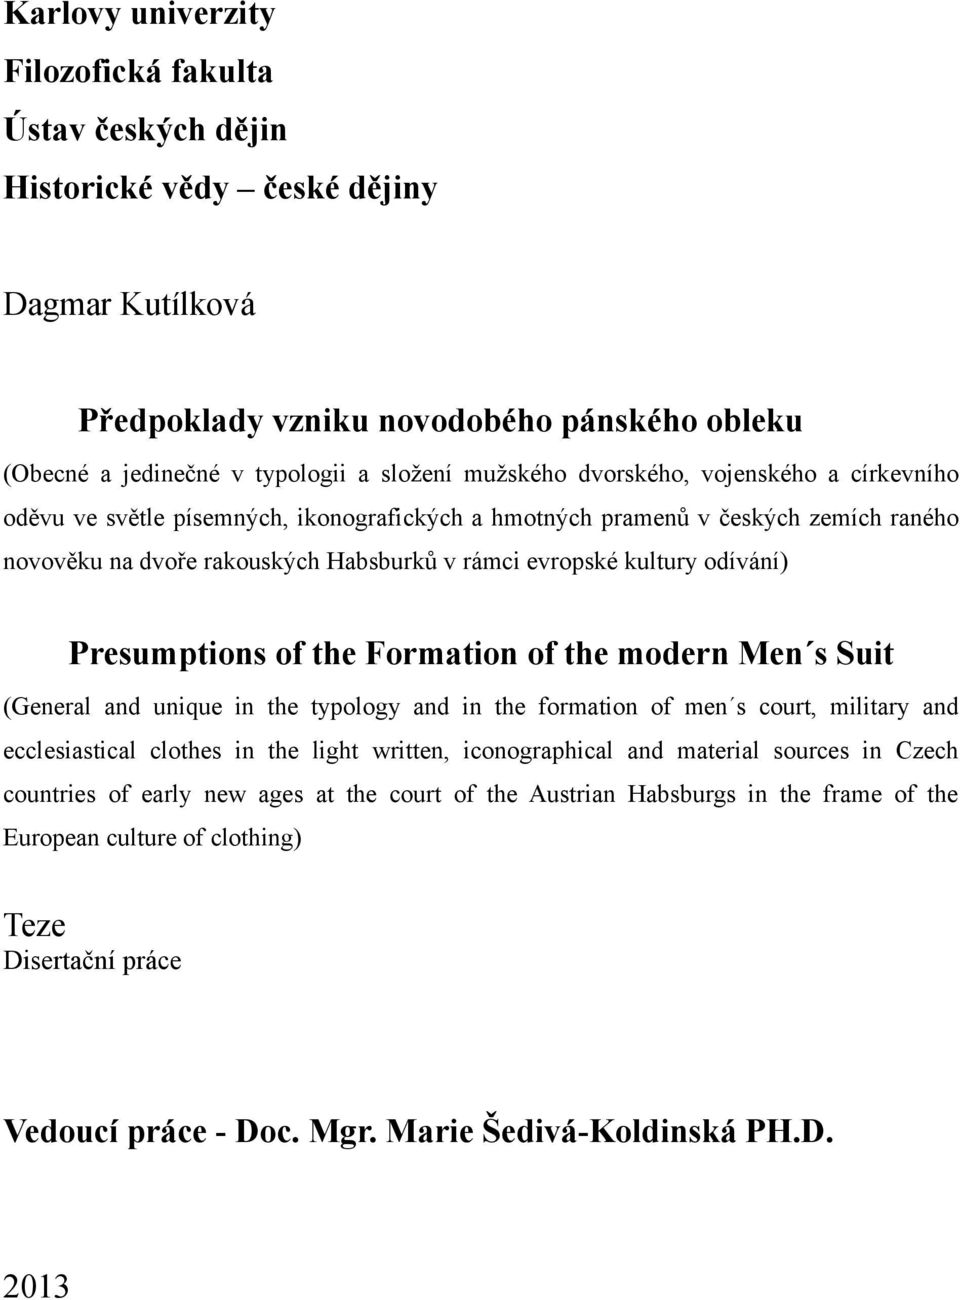 Vedoucí práce - Doc. Mgr. Marie Šedivá-Koldinská PH.D. - PDF Stažení zdarma